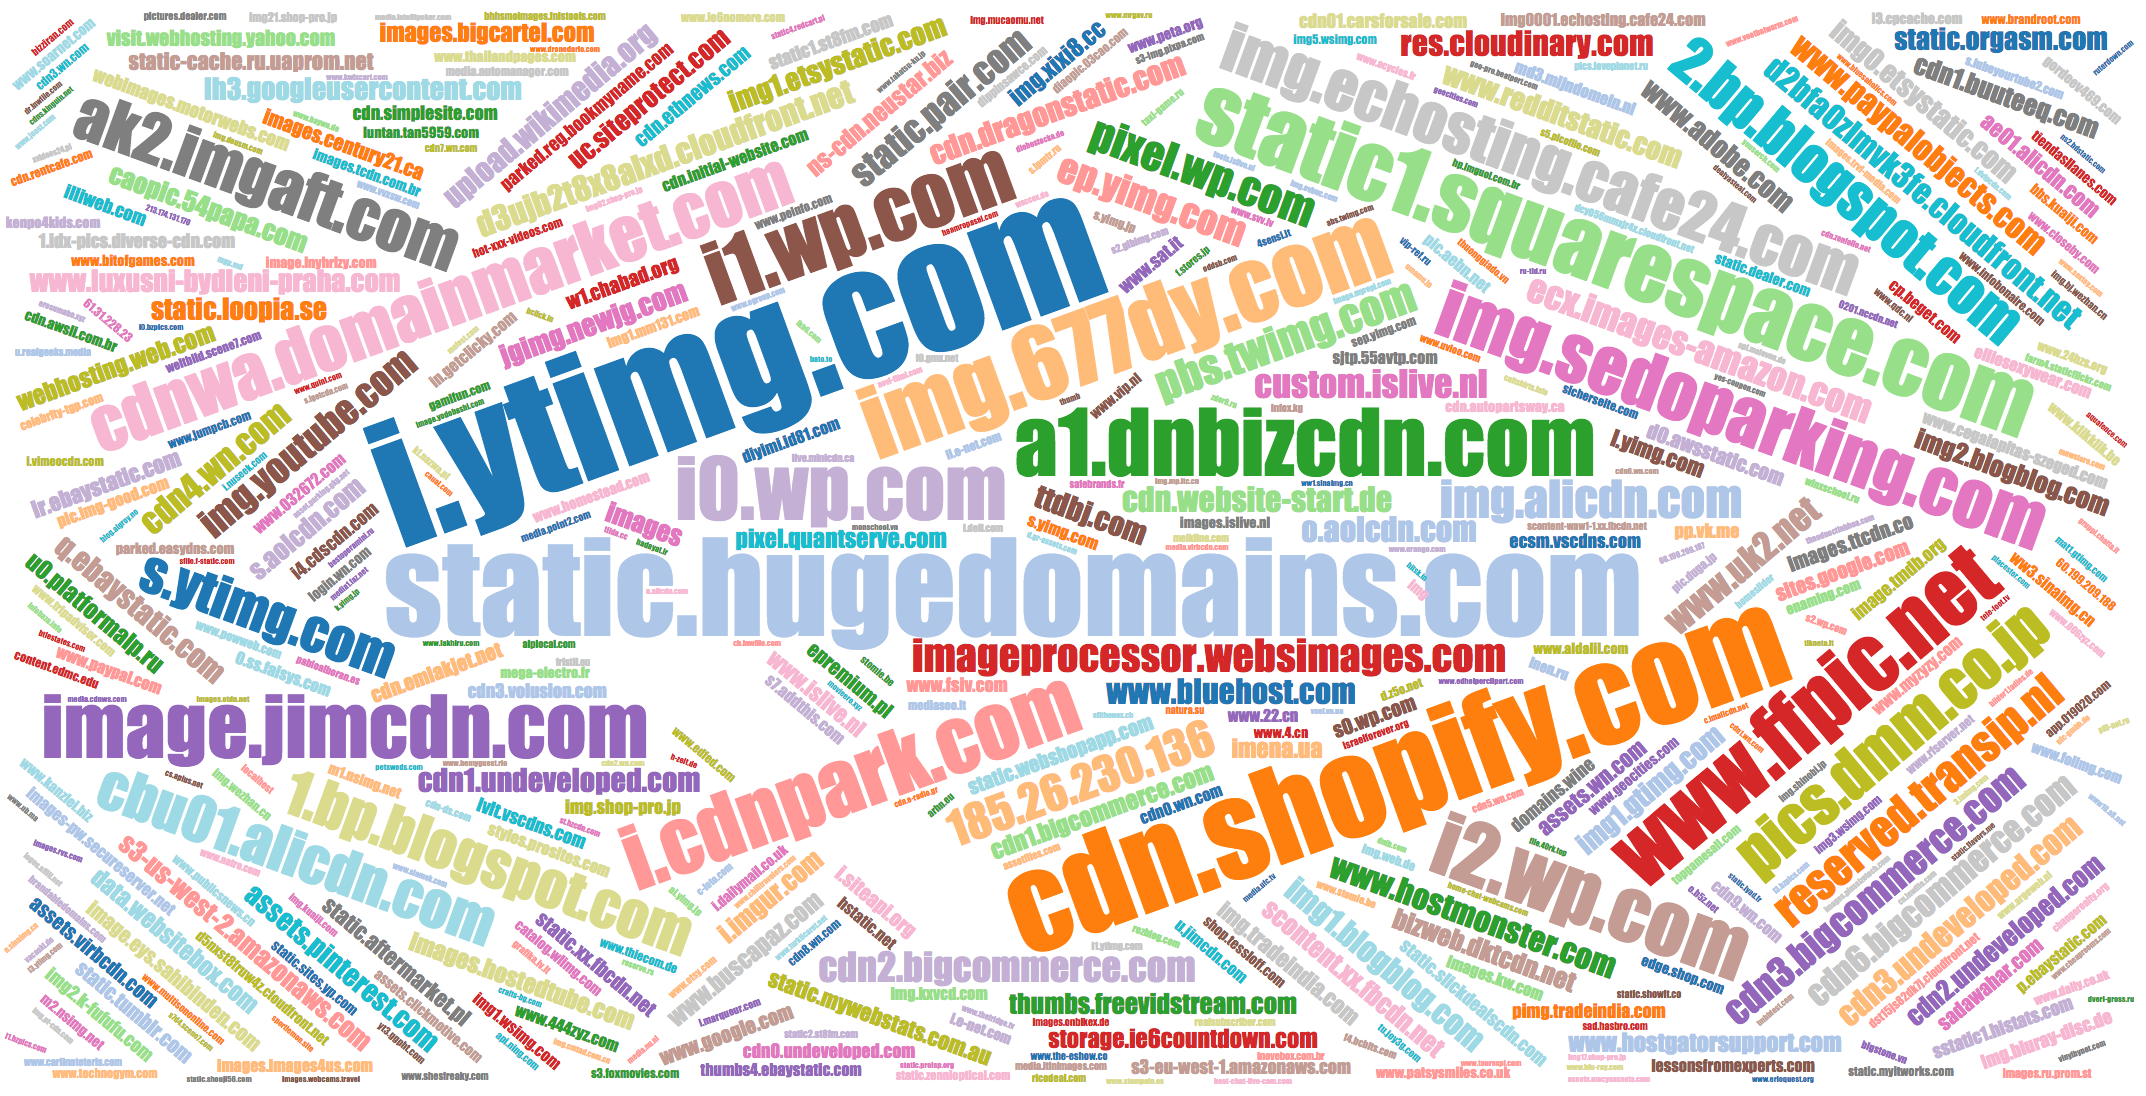 Popular names of IMG domains ecx.images-amazon.com, epremium.pl, etc.